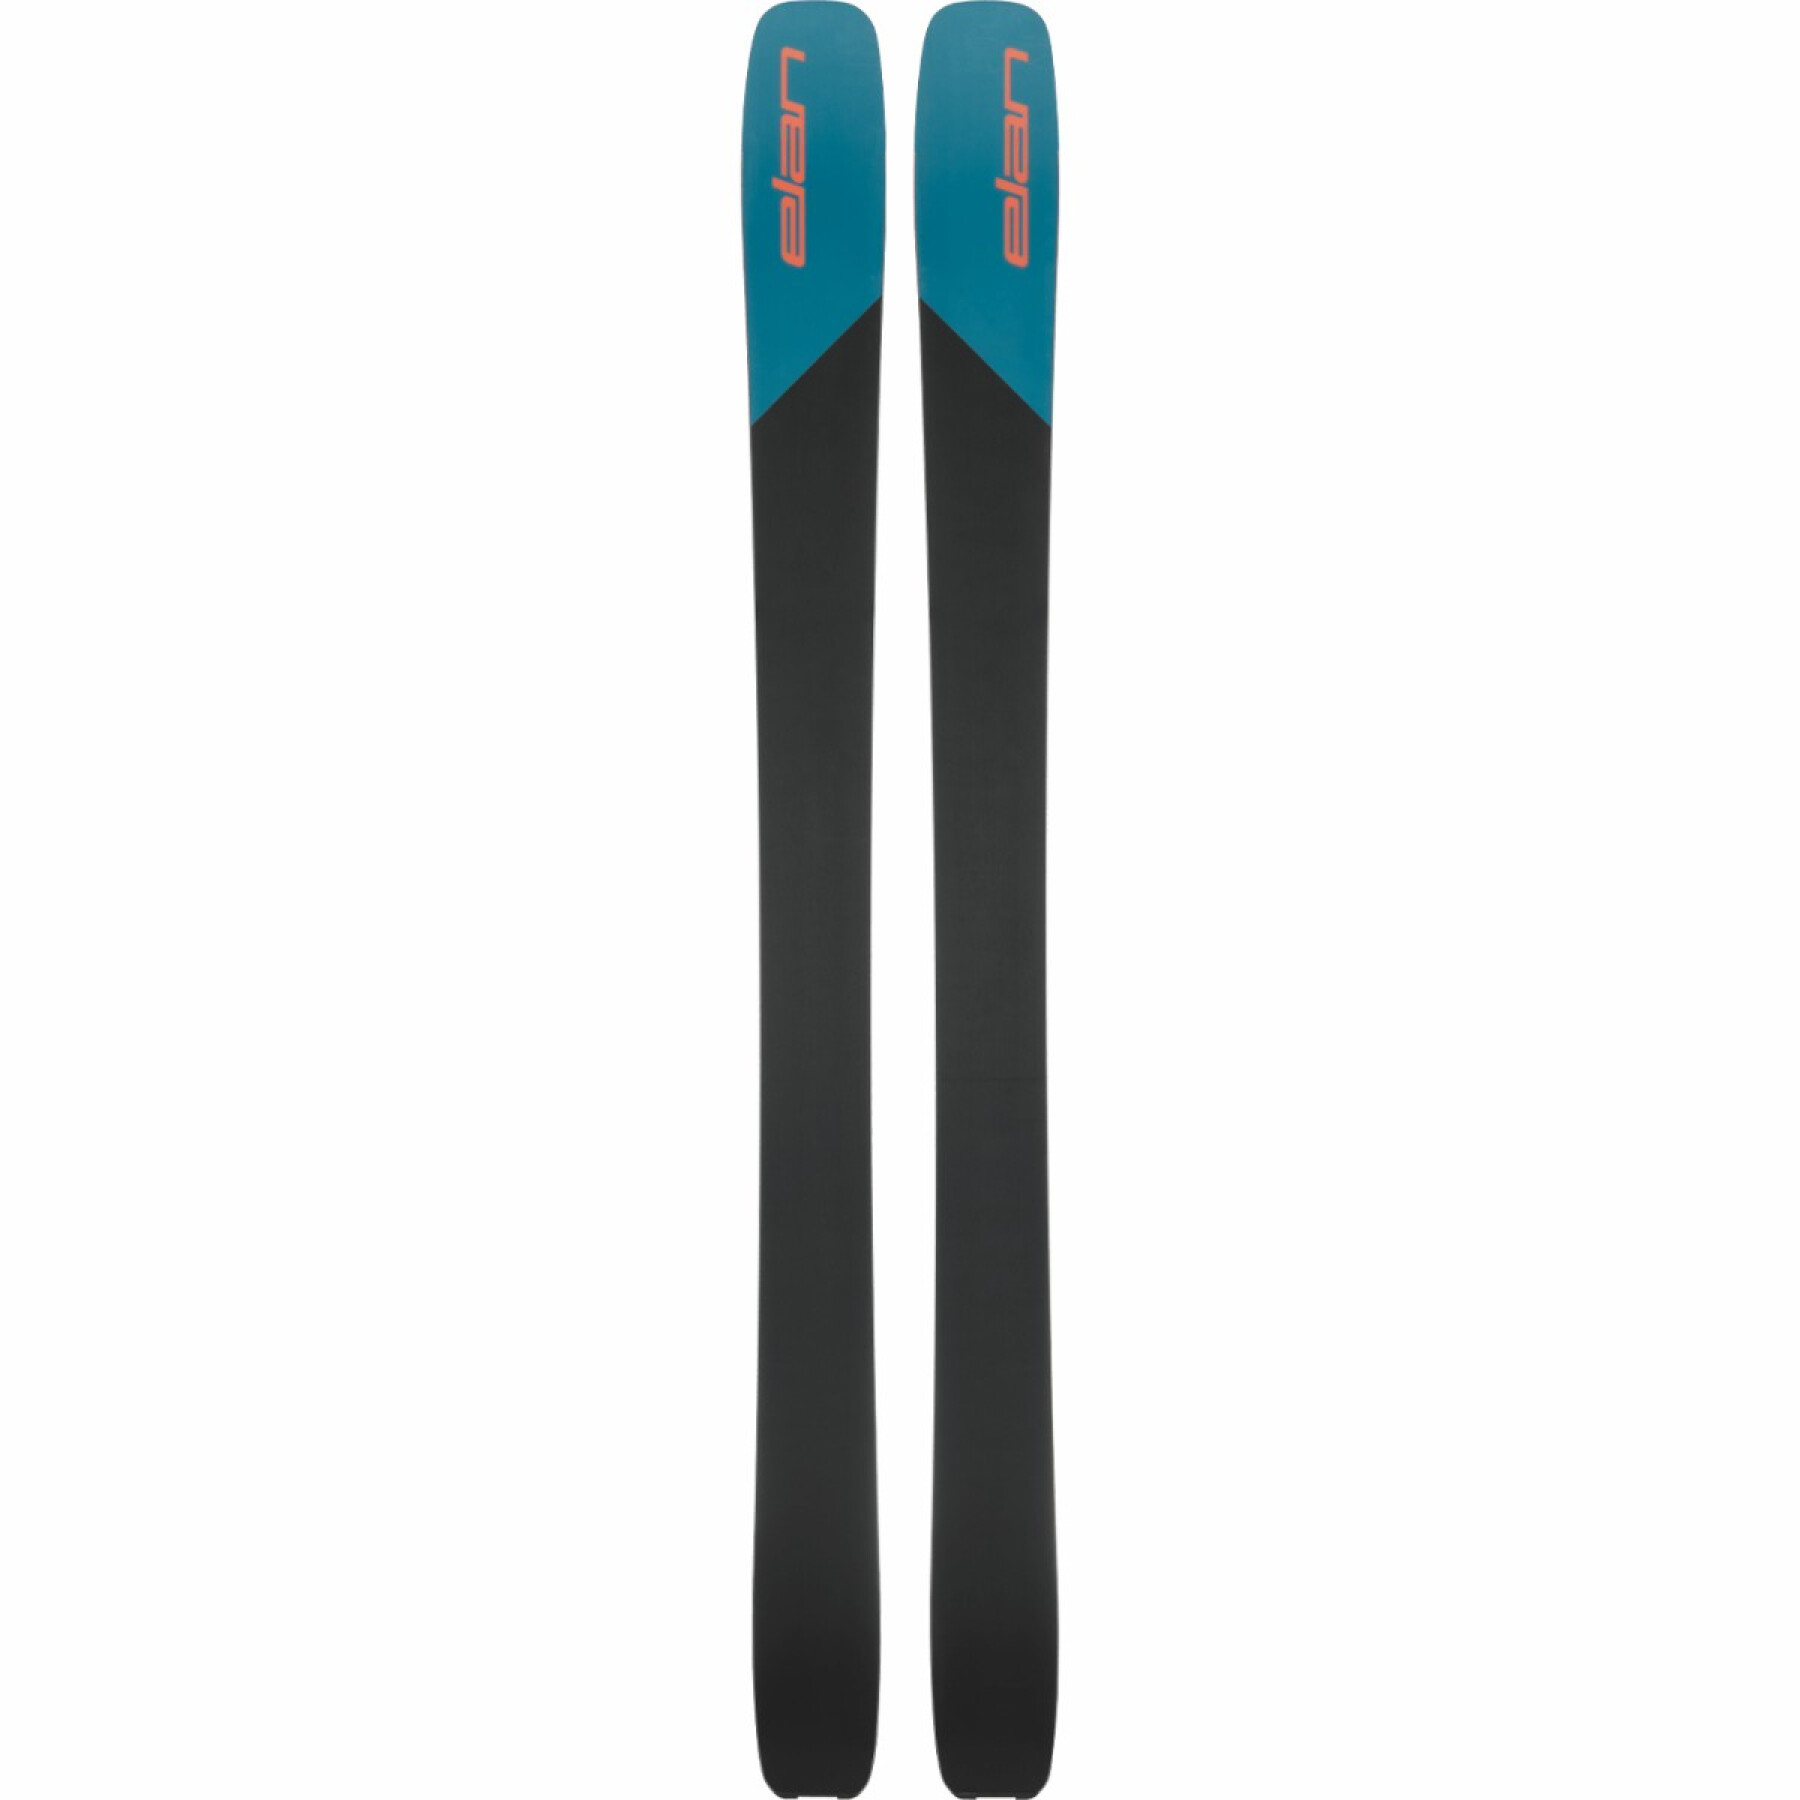 Skis ripstick 116 Elan